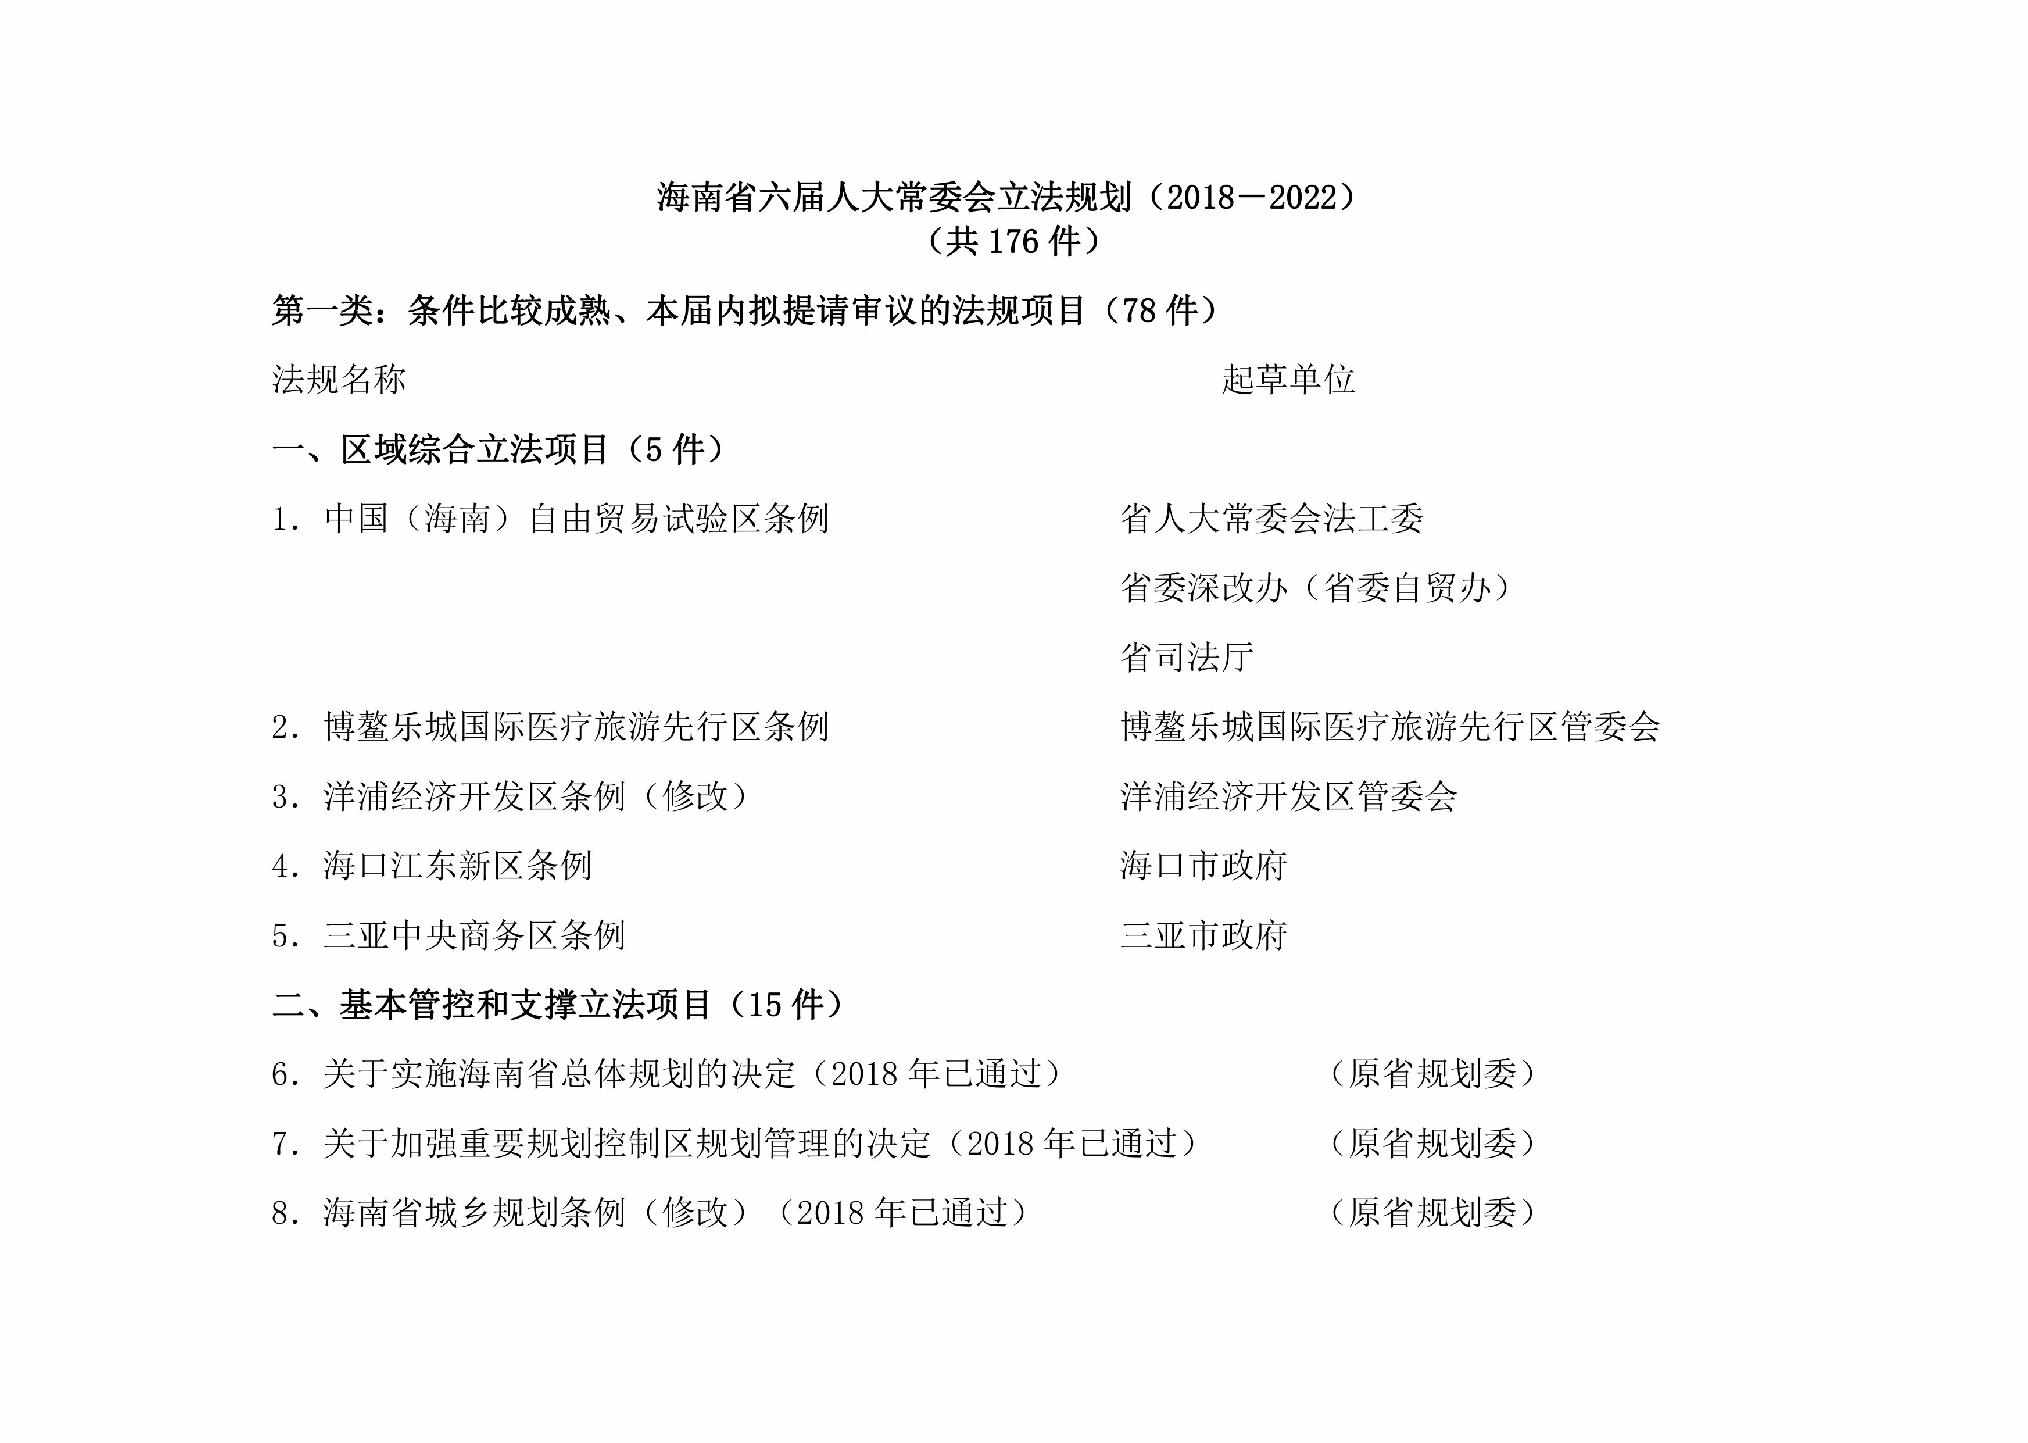 HAN-LJRDCWHL-2019：海南省六届人大常委会立法规划（2018－2022）